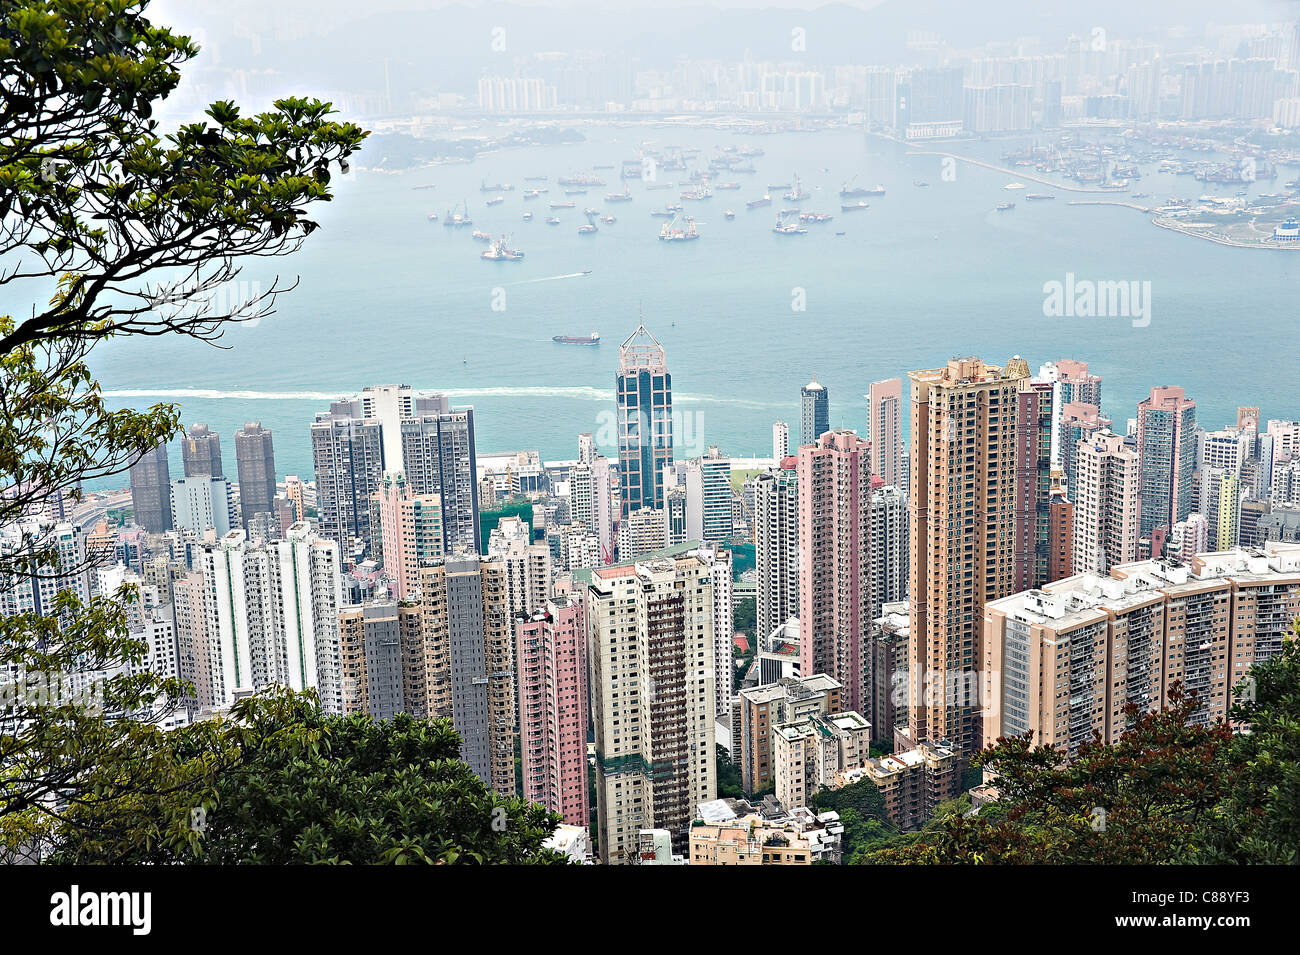 Vue panoramique de l'île de Hong Kong gratte-ciel de marche et Pic Pic Victoria Garden Hong Kong Chine Asie Banque D'Images